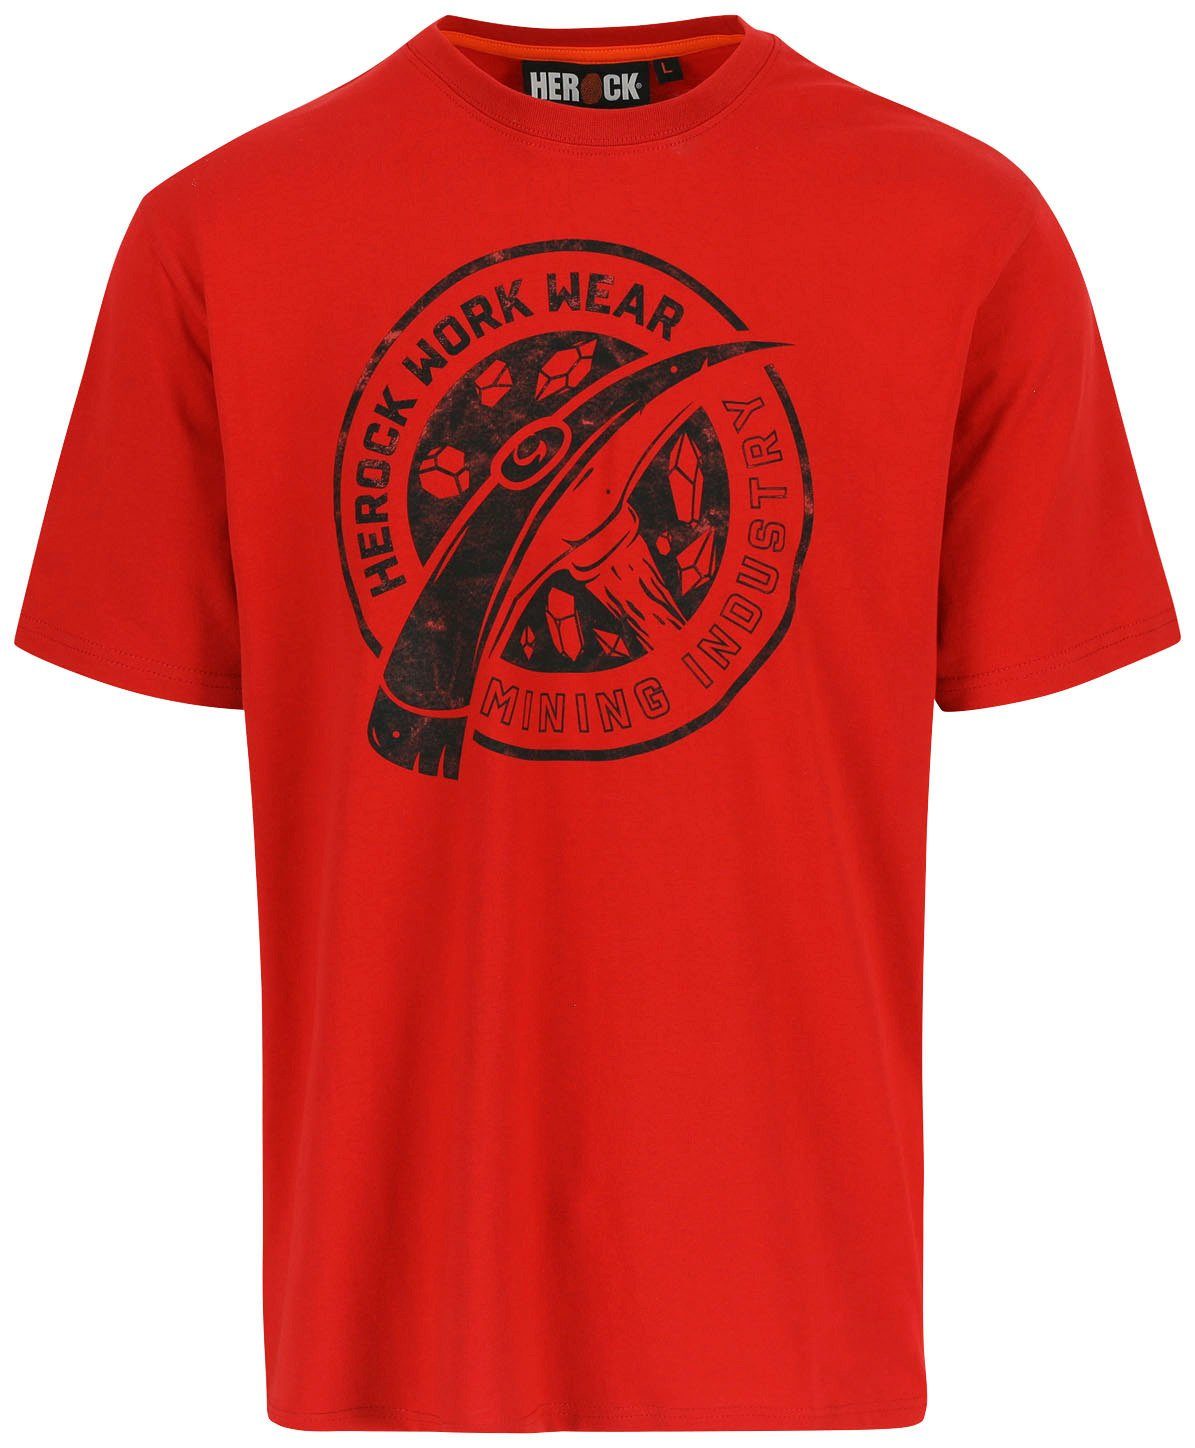 Herock T-Shirt Worker verschiedene Limited Edition, Farben in rot erhältlich